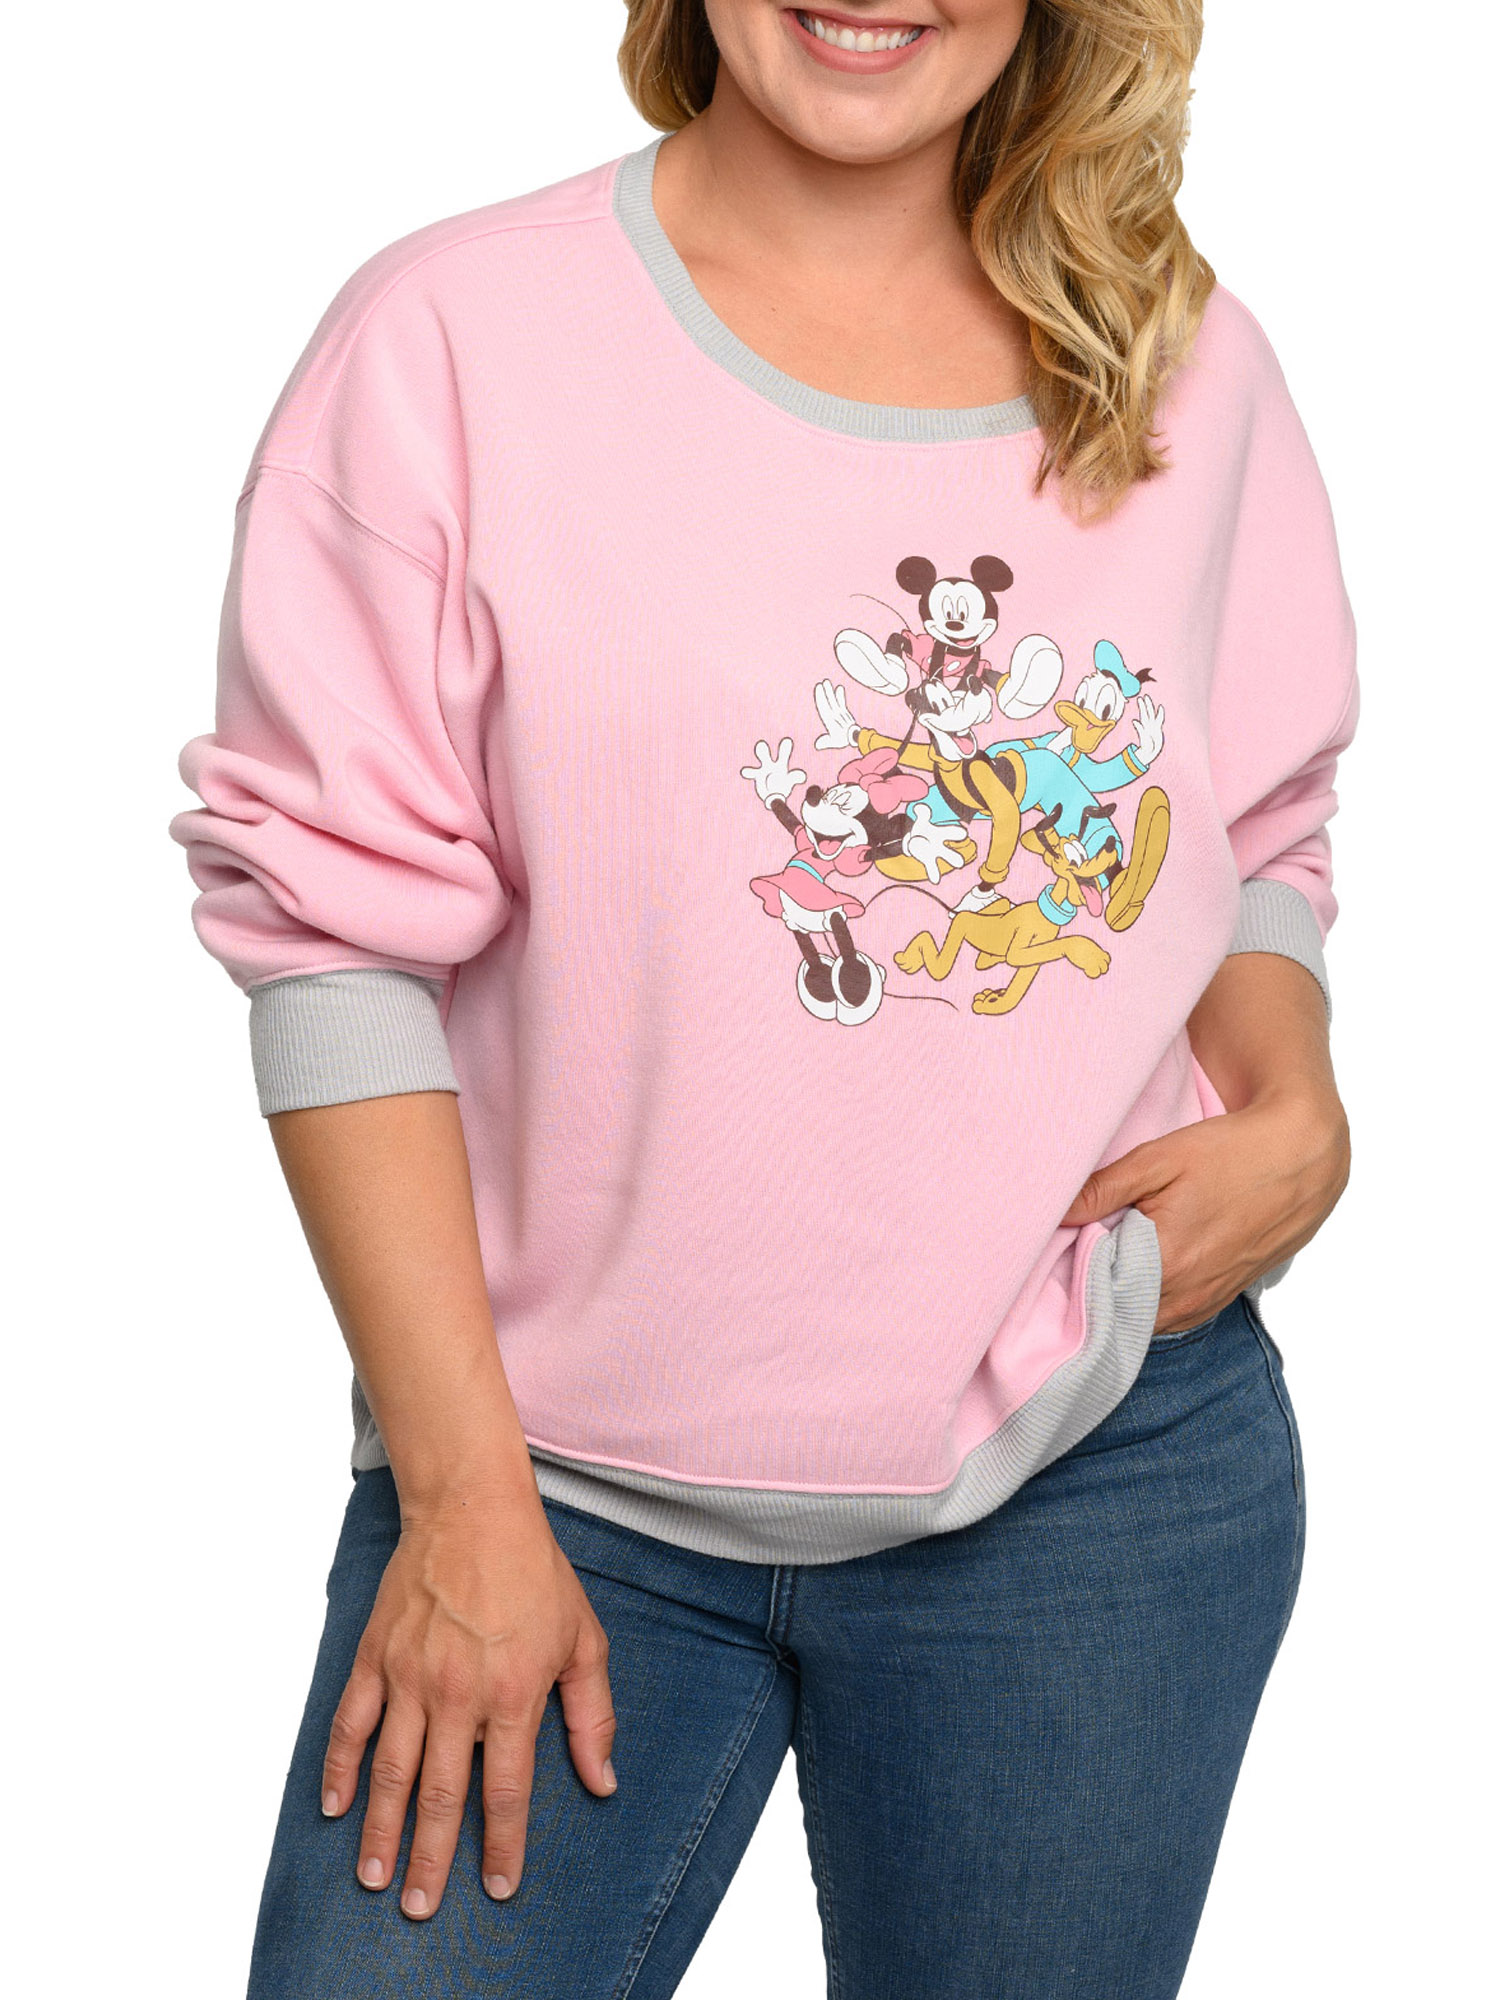 Disney Womens Plus Size Mickey Mouse Friends Fleece Long Sleeve Sweatshirt Pink